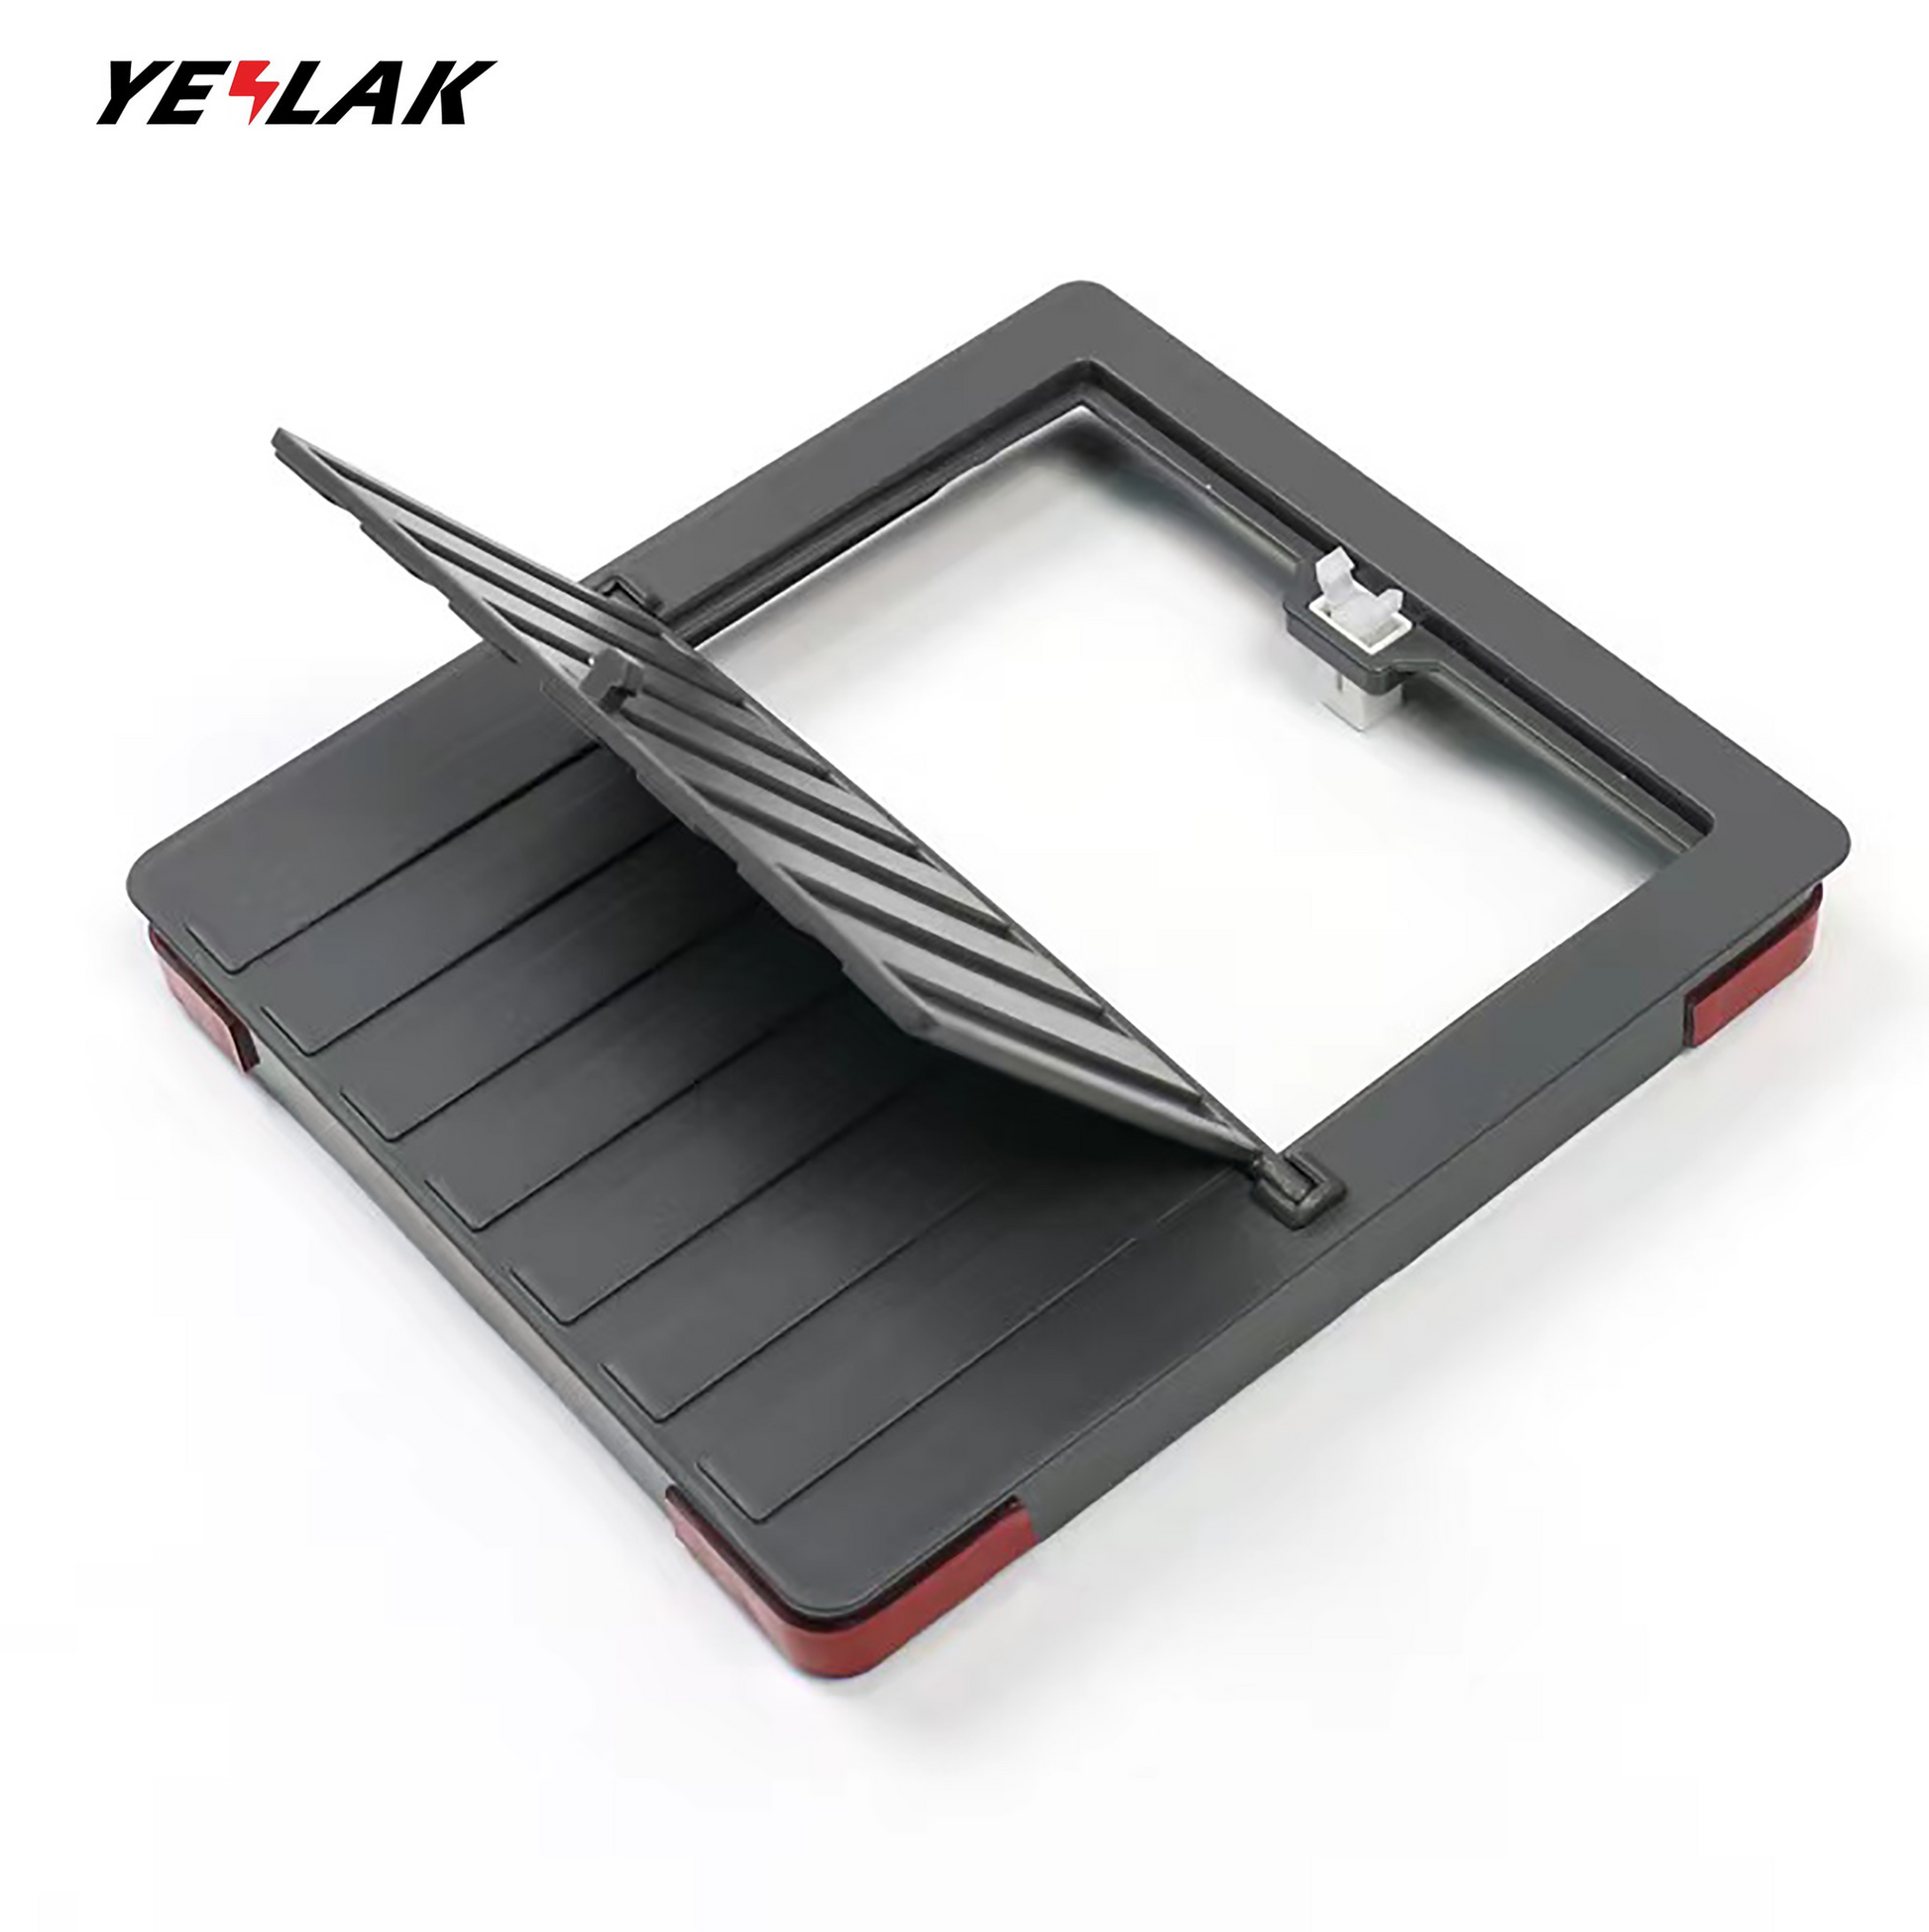 Beste Tesla Model 3/Y versteckte Geheimfach-Organizer-Box – Yeslak